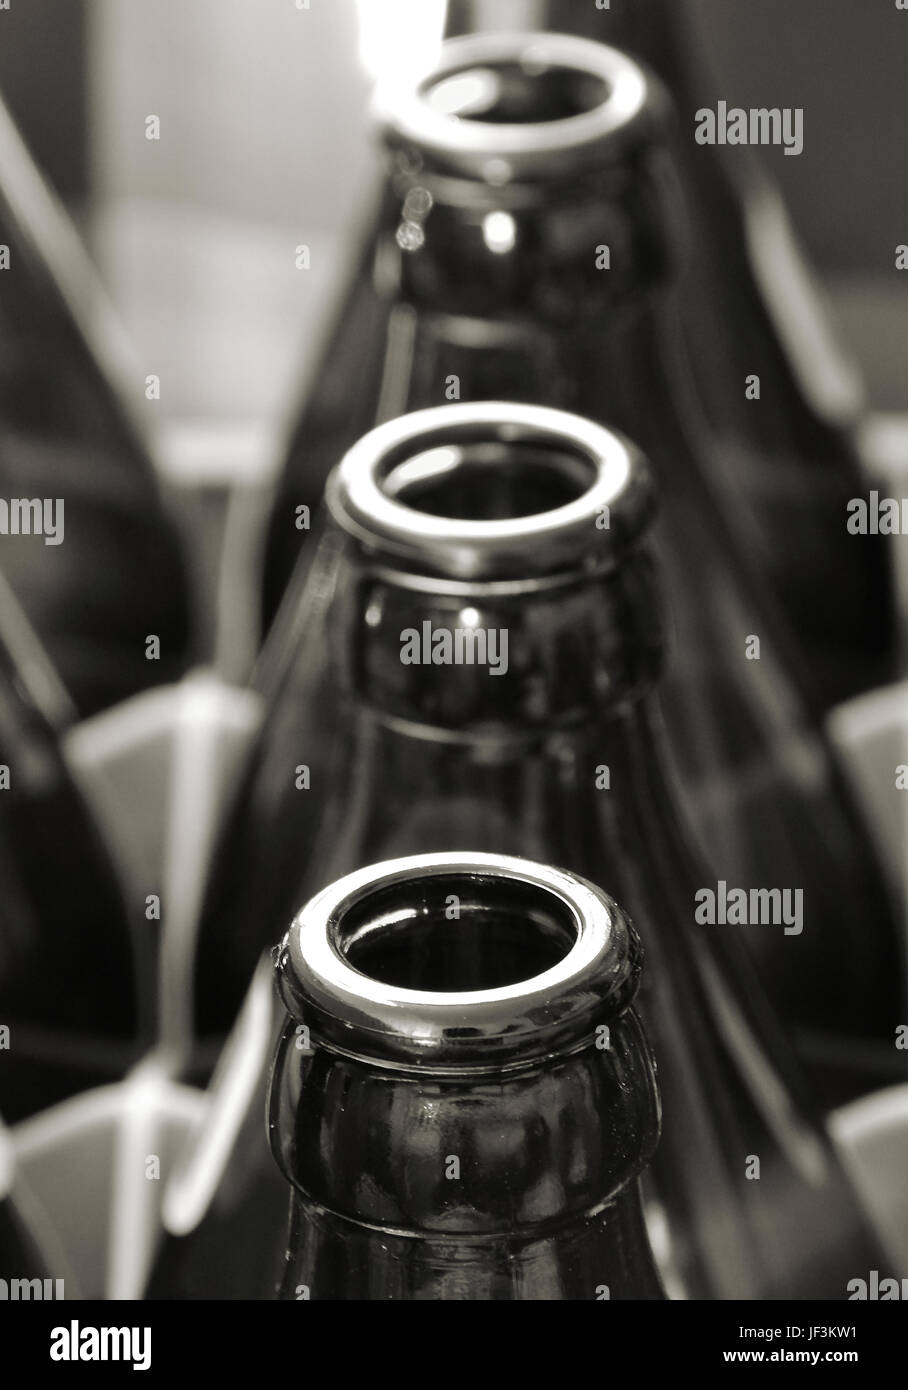 Des bouteilles vides dans une caisse de bière Banque D'Images